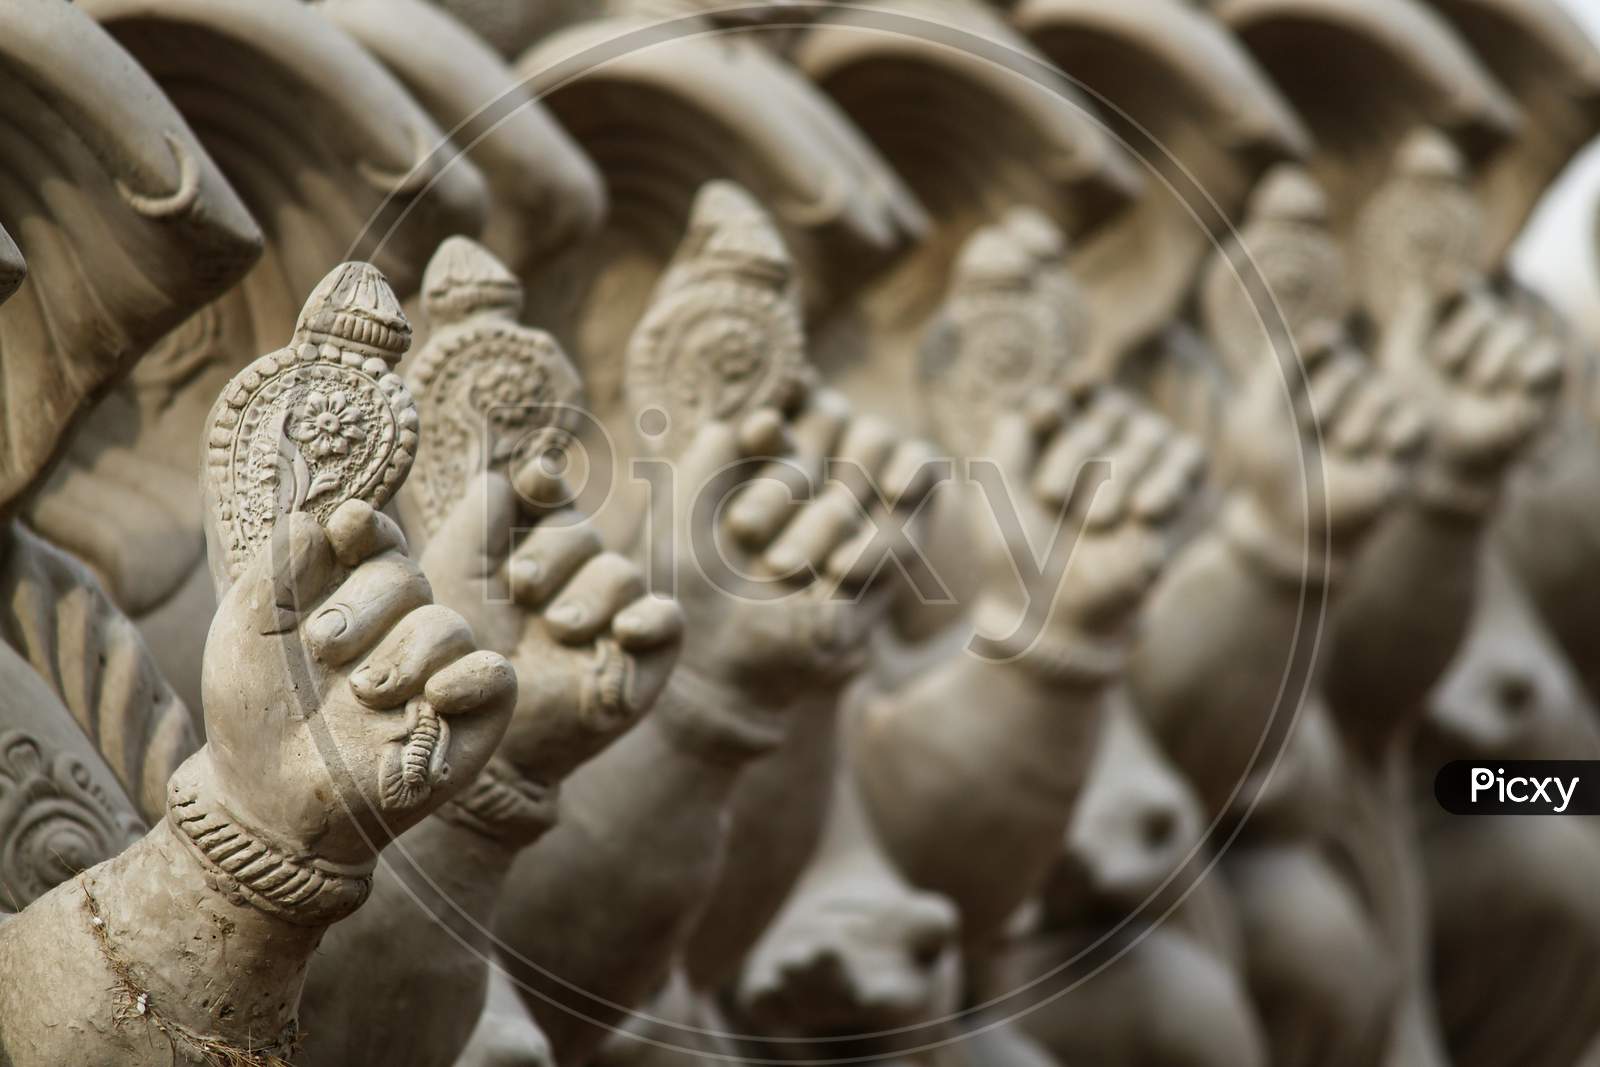 Unfinished Ganesh idols show cased